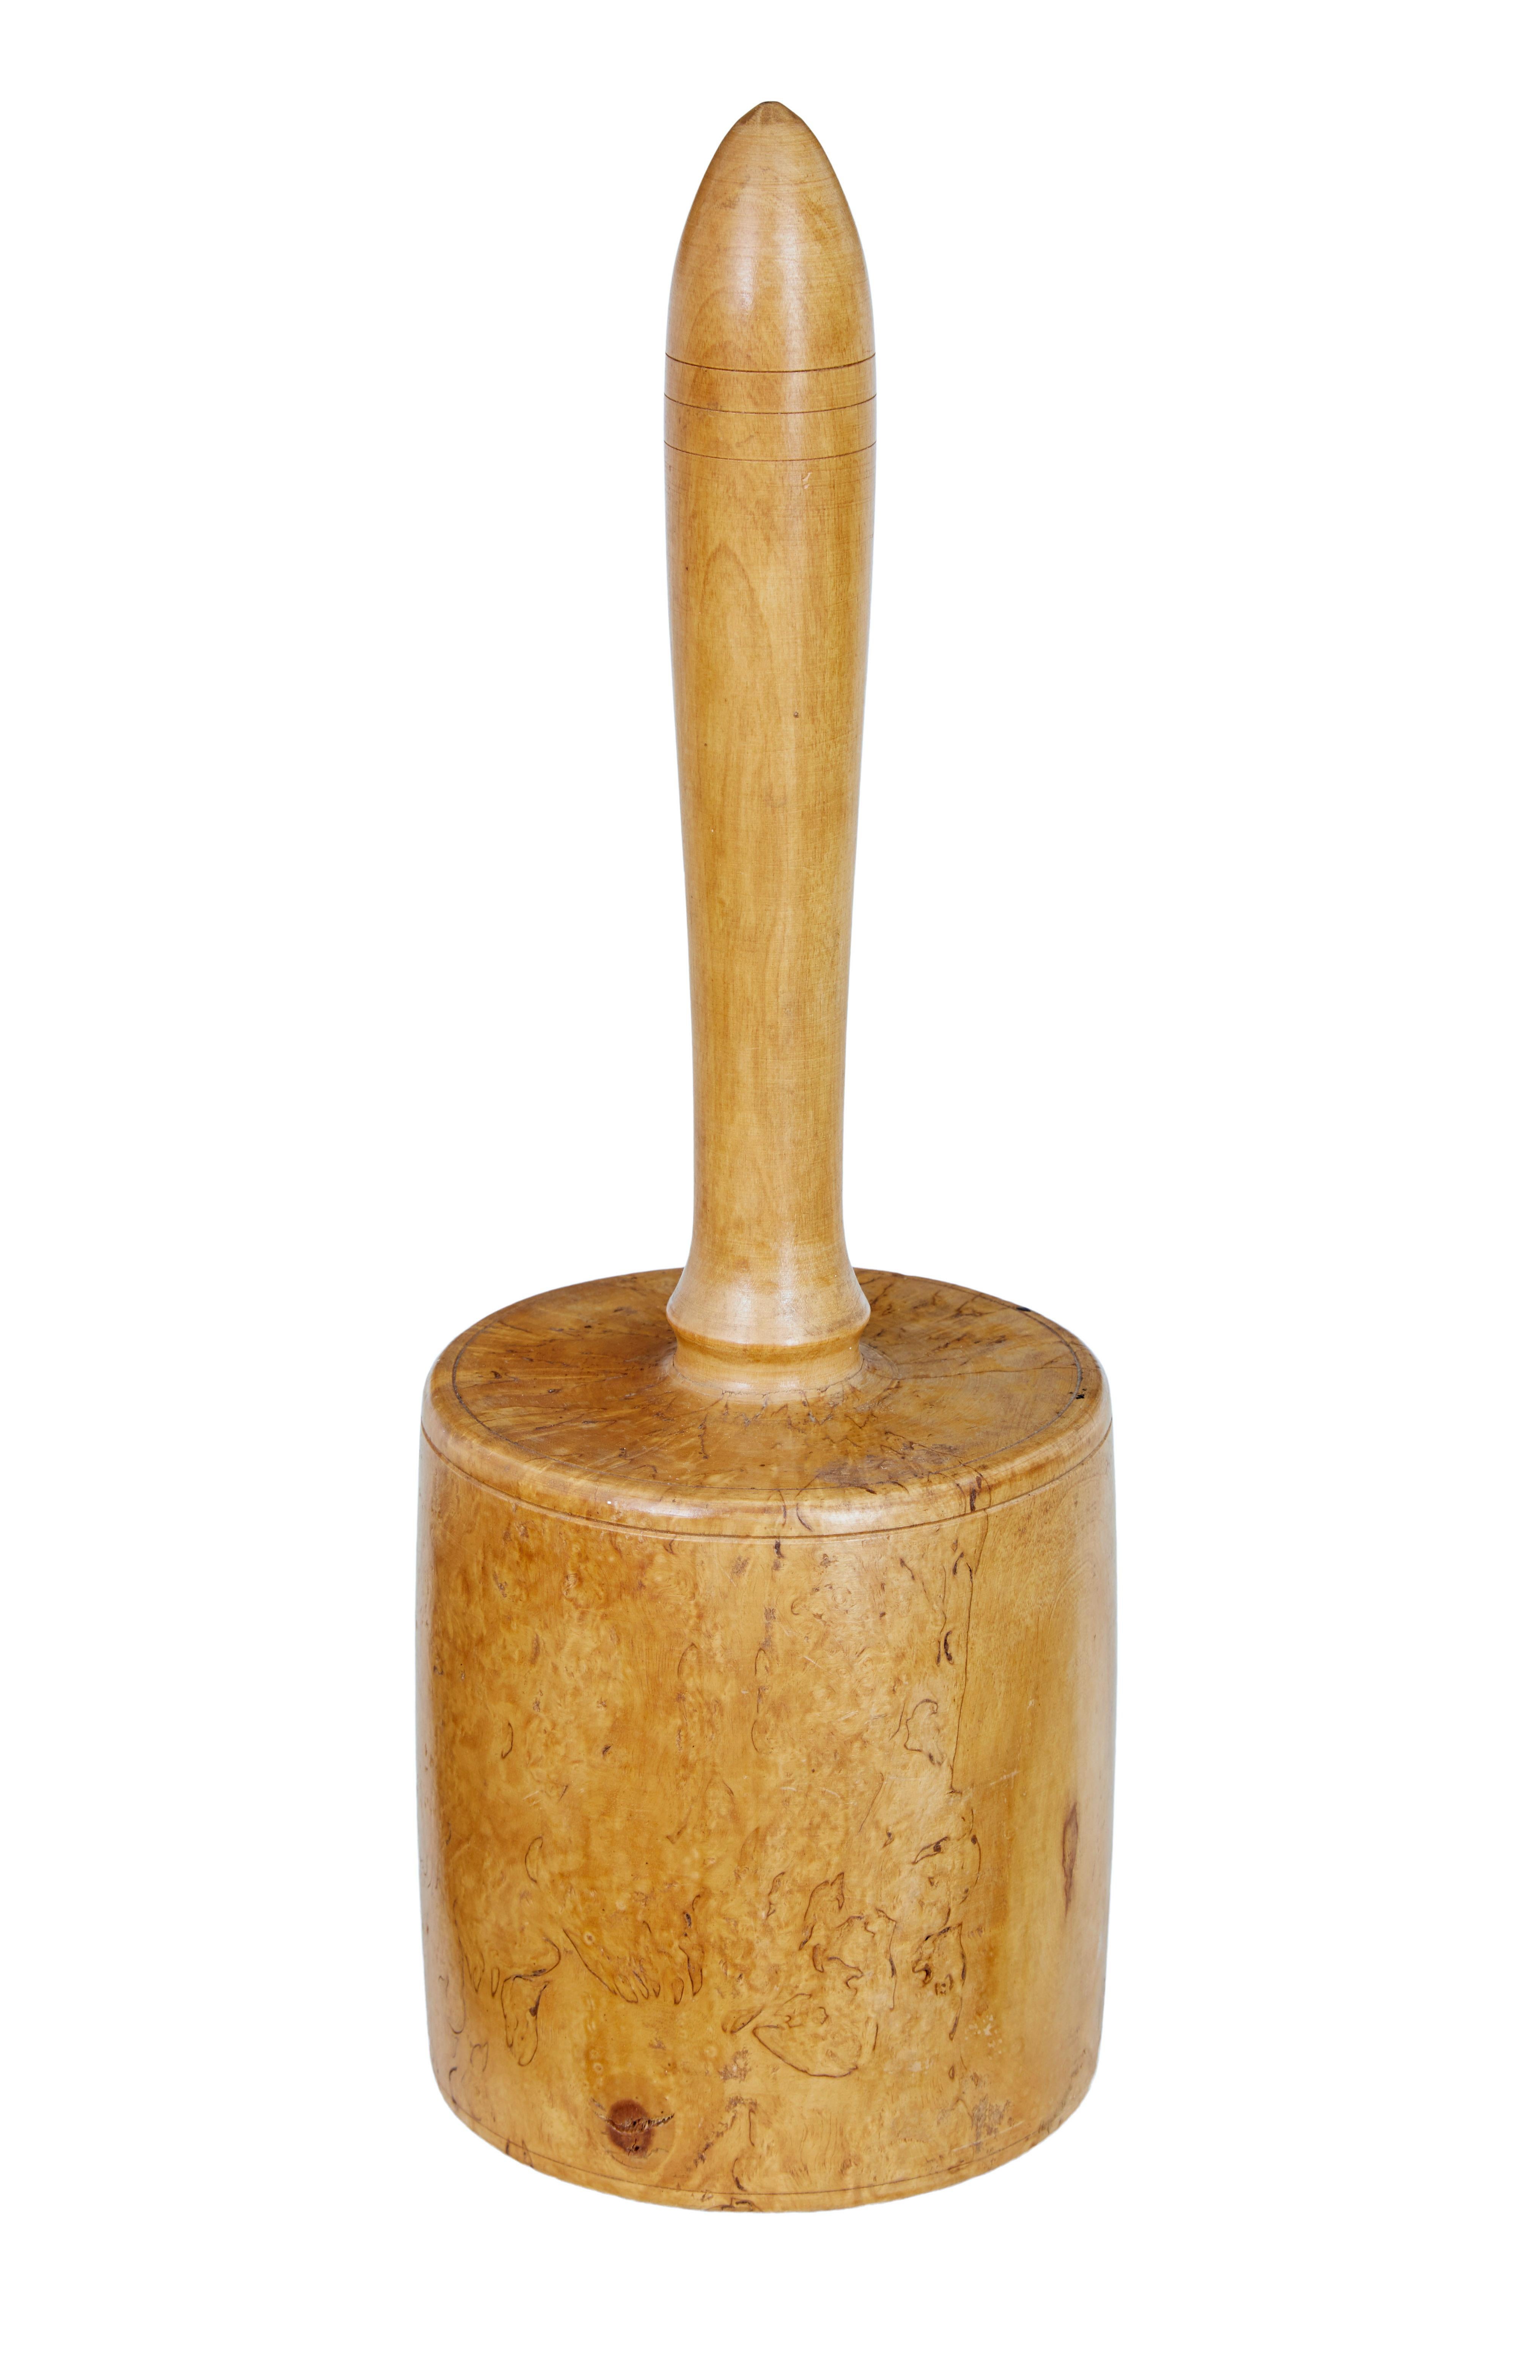 Massiver Birkenholzhammer aus dem frühen 20. Jahrhundert, um 1900.

Aus einem massiven Stück Birke gedrechselt, hat dieser Bildhauerhammer kaum Gebrauchsspuren.  1 Stück, Griff mit fein gedrehten Details.

Ideal zur Dekoration auf dem Schreibtisch